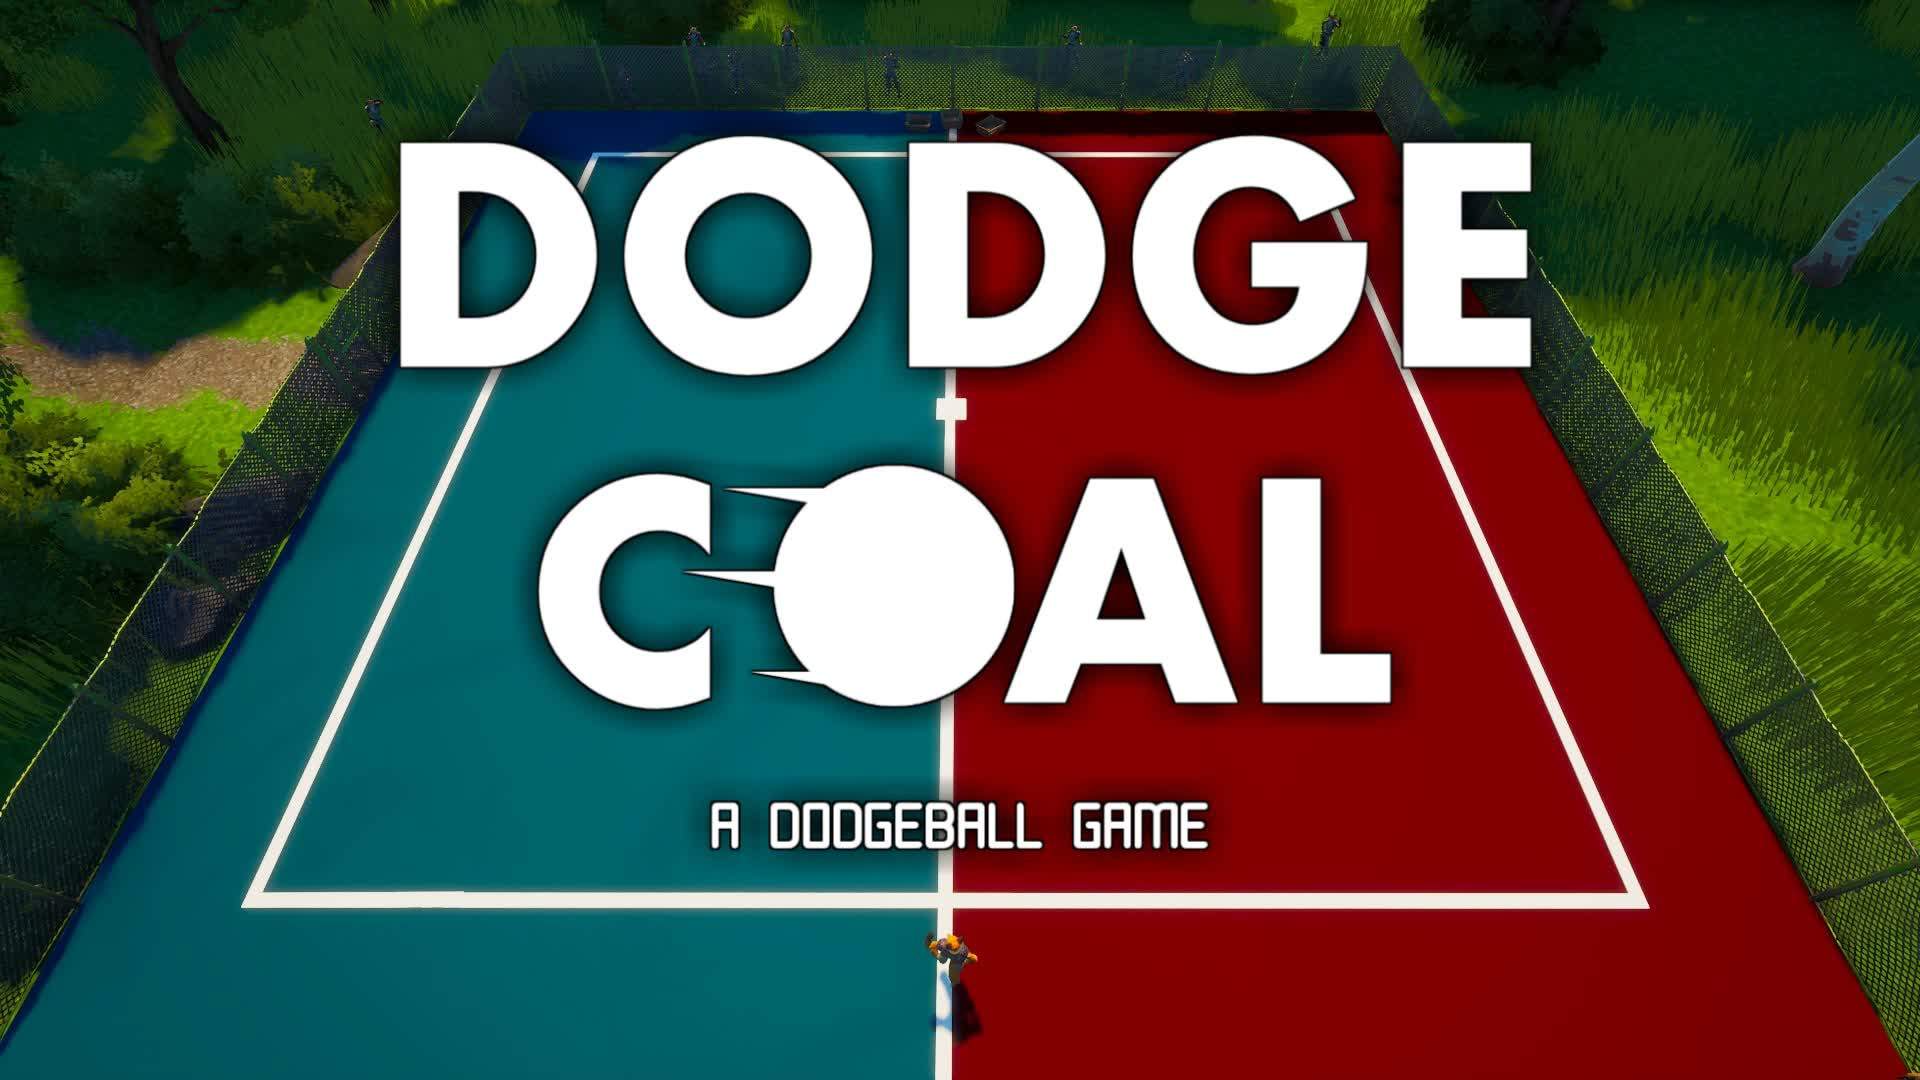 DODGECOAL - A DODGEBALL GAME!